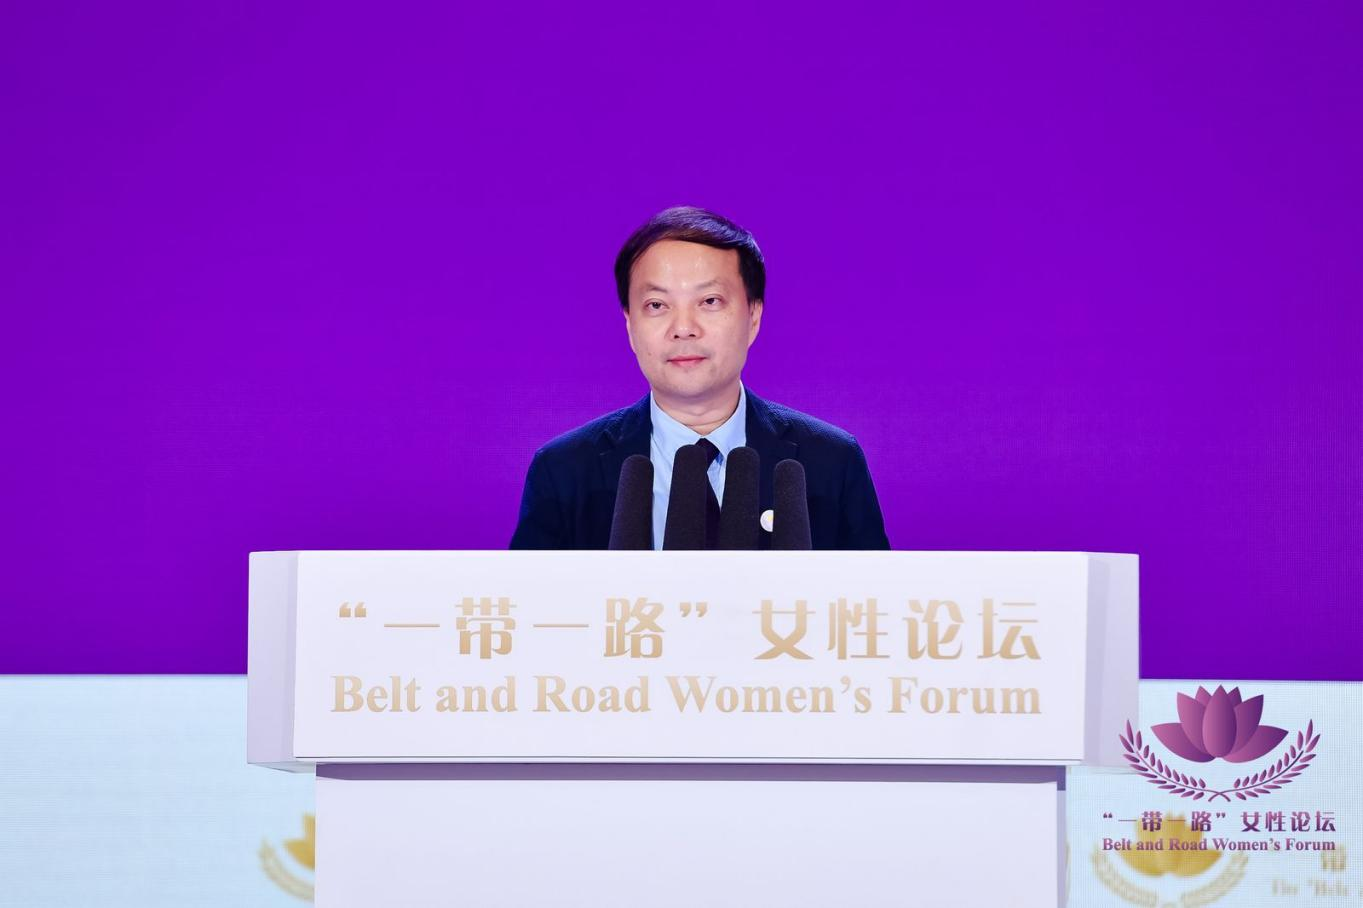 三亚市委副书记、市政府市长陈希出席第五届“一带一路”女性论坛开幕式并致辞